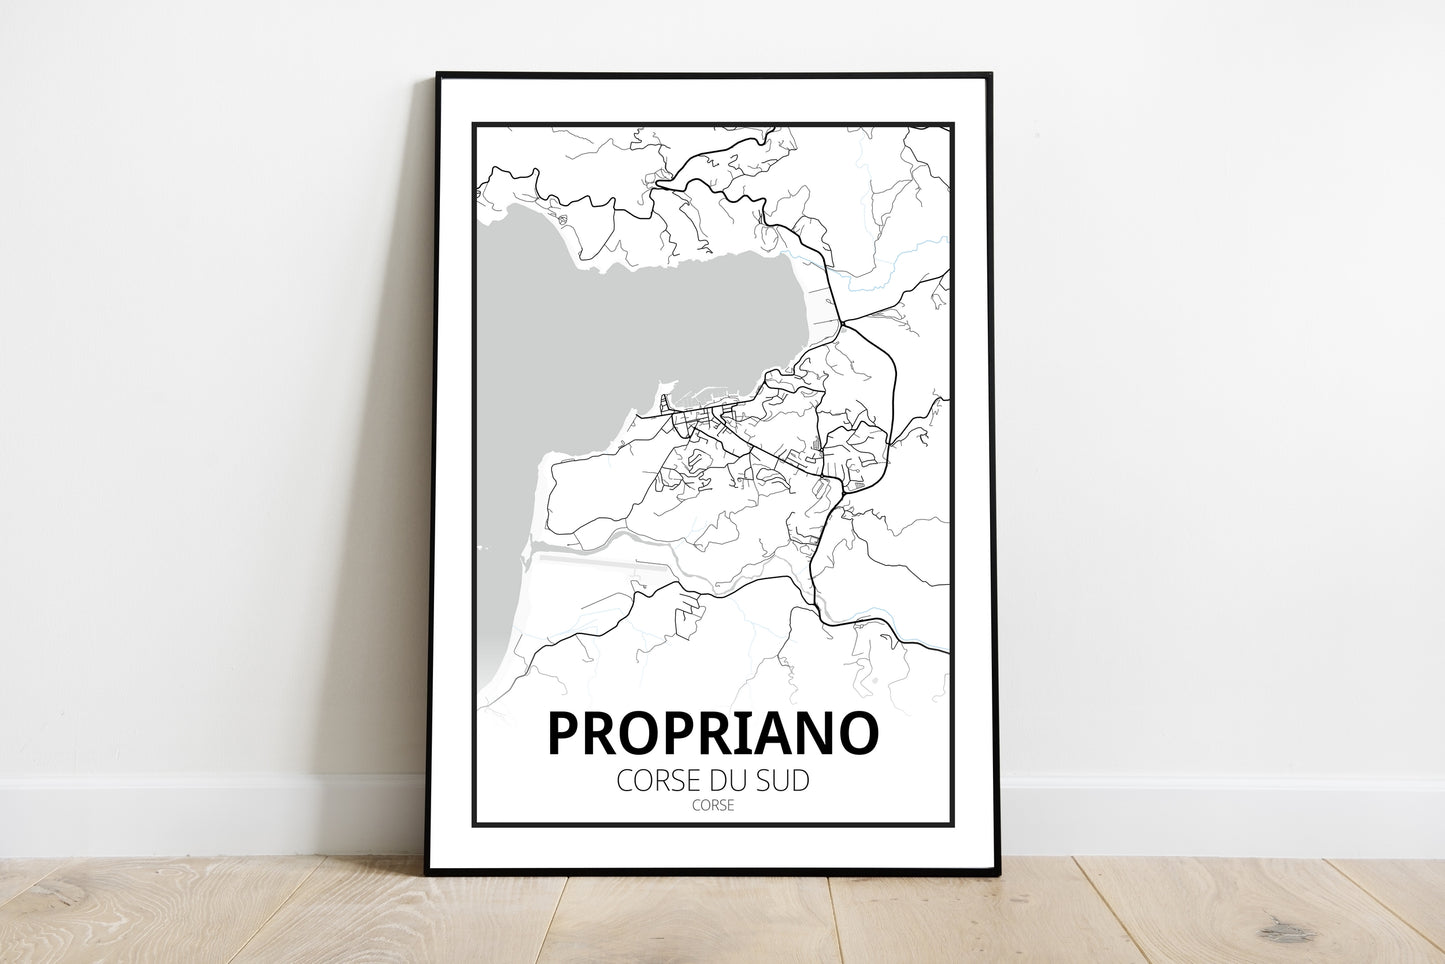 Propriano - Corse du Sud